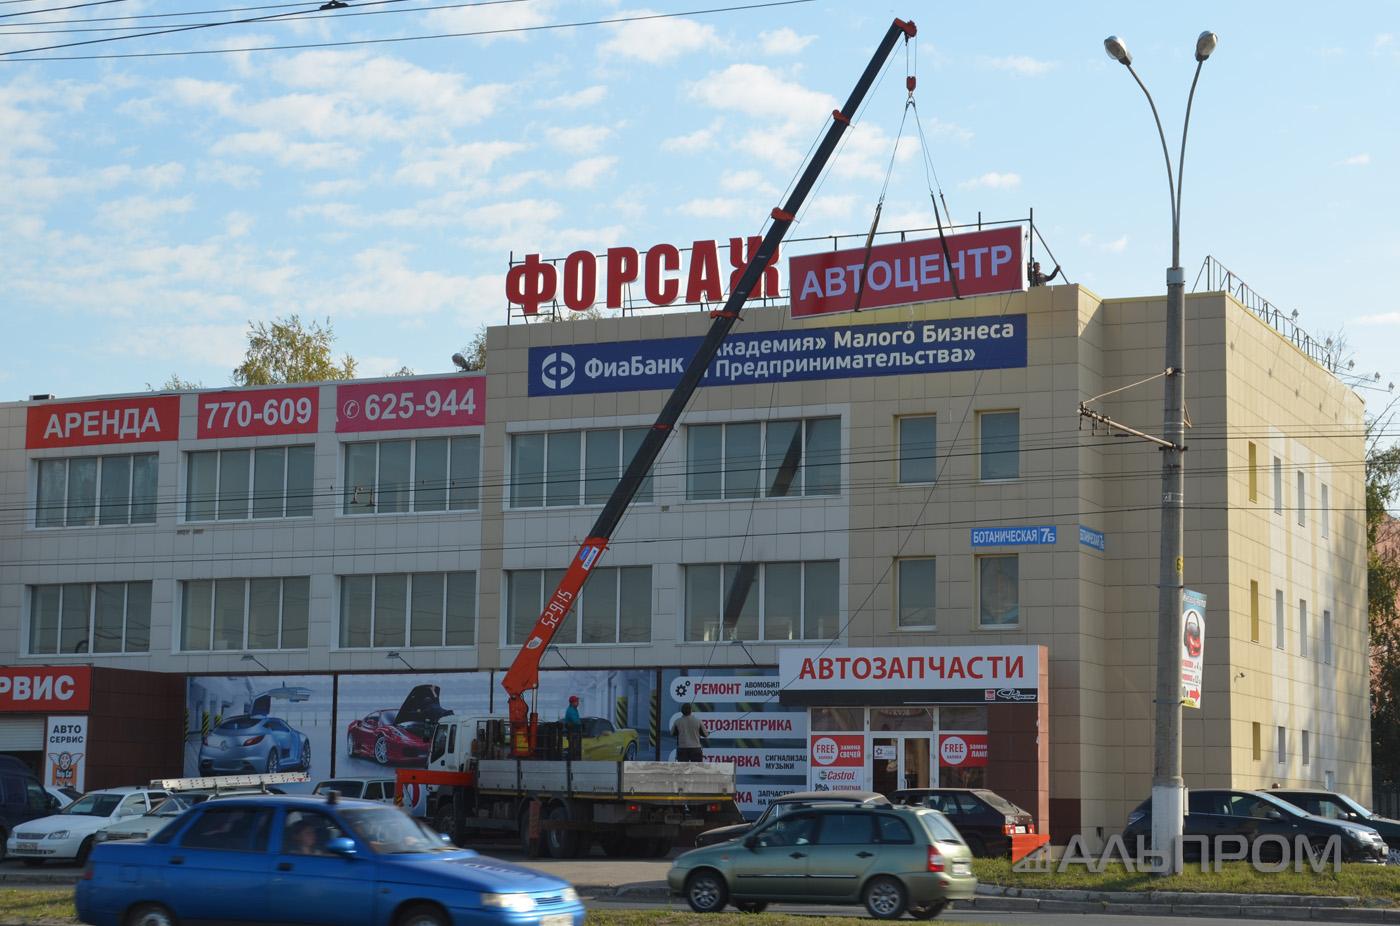 Крышная рекламная конструкция в Тольятти